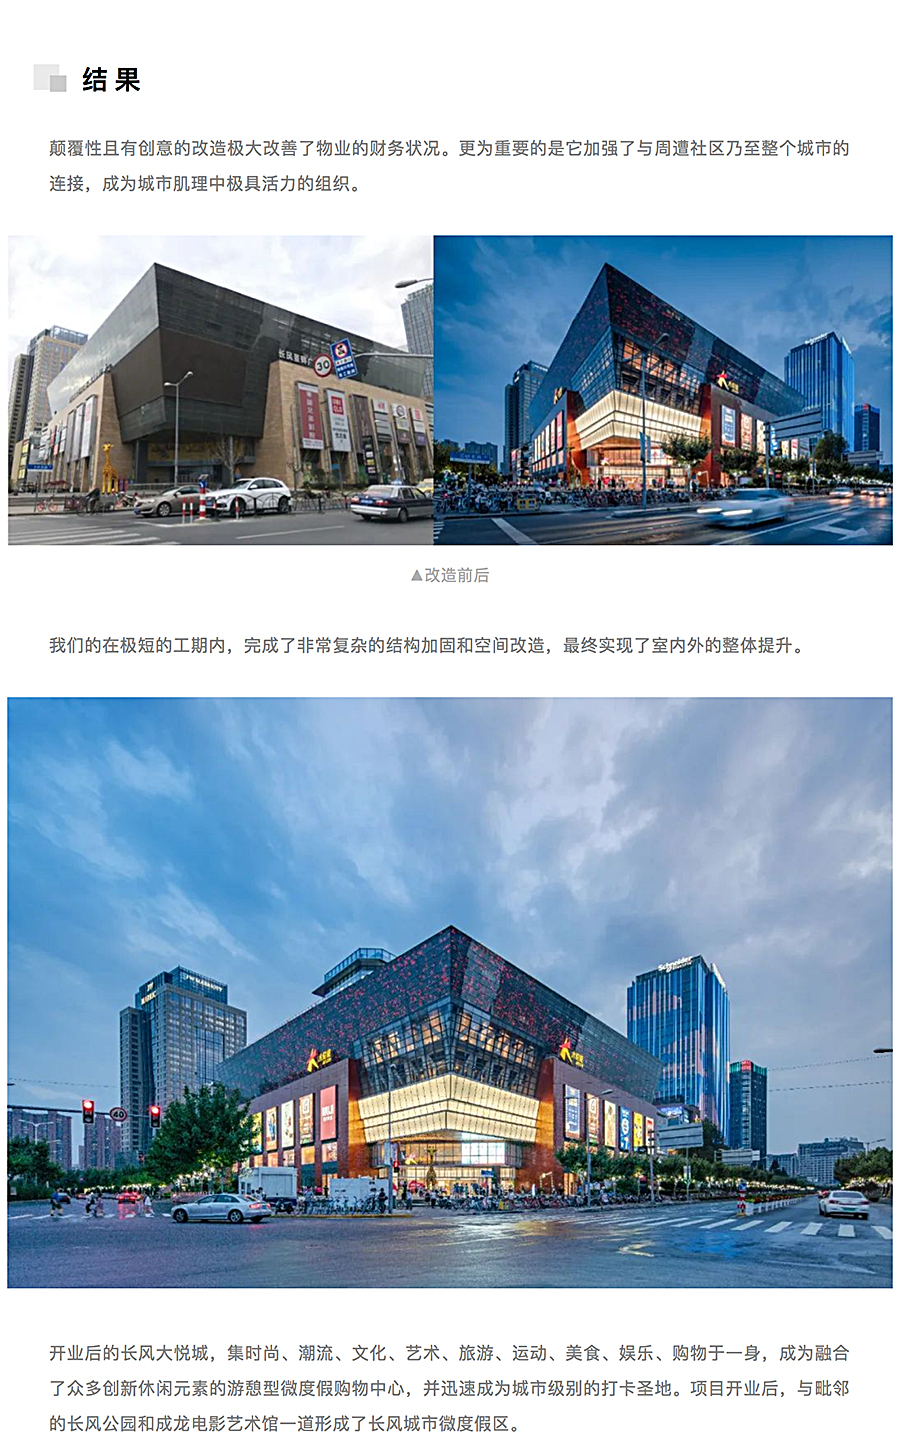 上海长风大悦城-_-AICO-2020-REARD金奖项目赏析_0008_图层-9.jpg